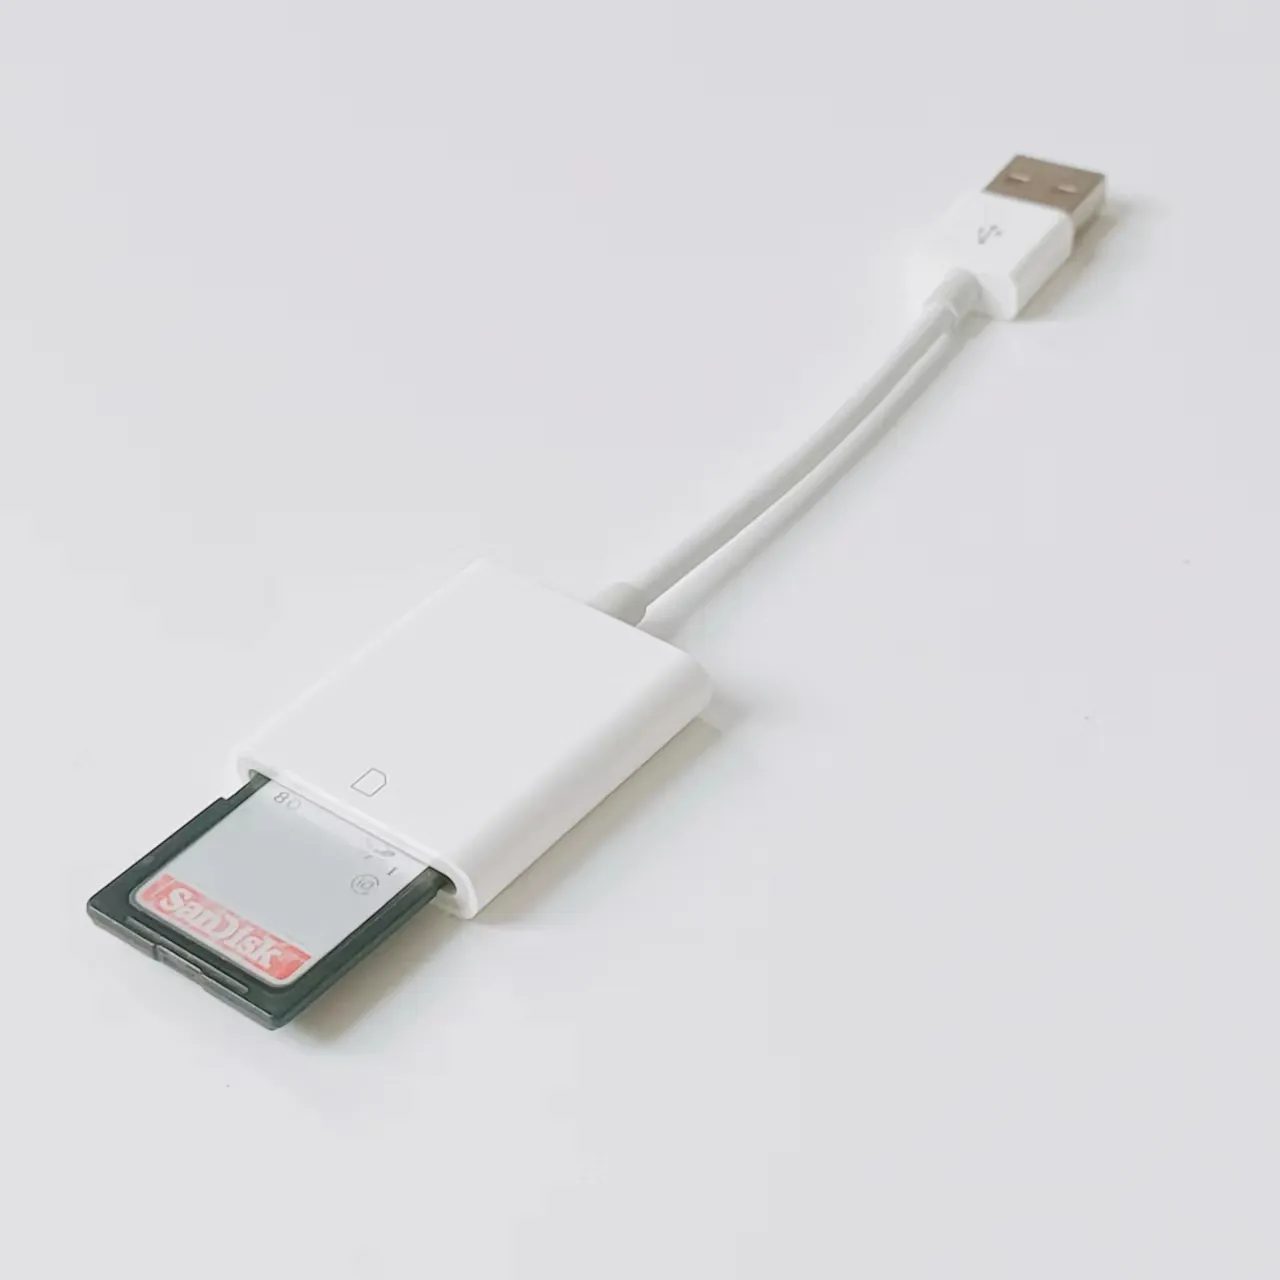 Lecteur de carte SD USB Flash lecteur de carte mémoire SD pour Mac Windows Linux Chrome ordinateur portable